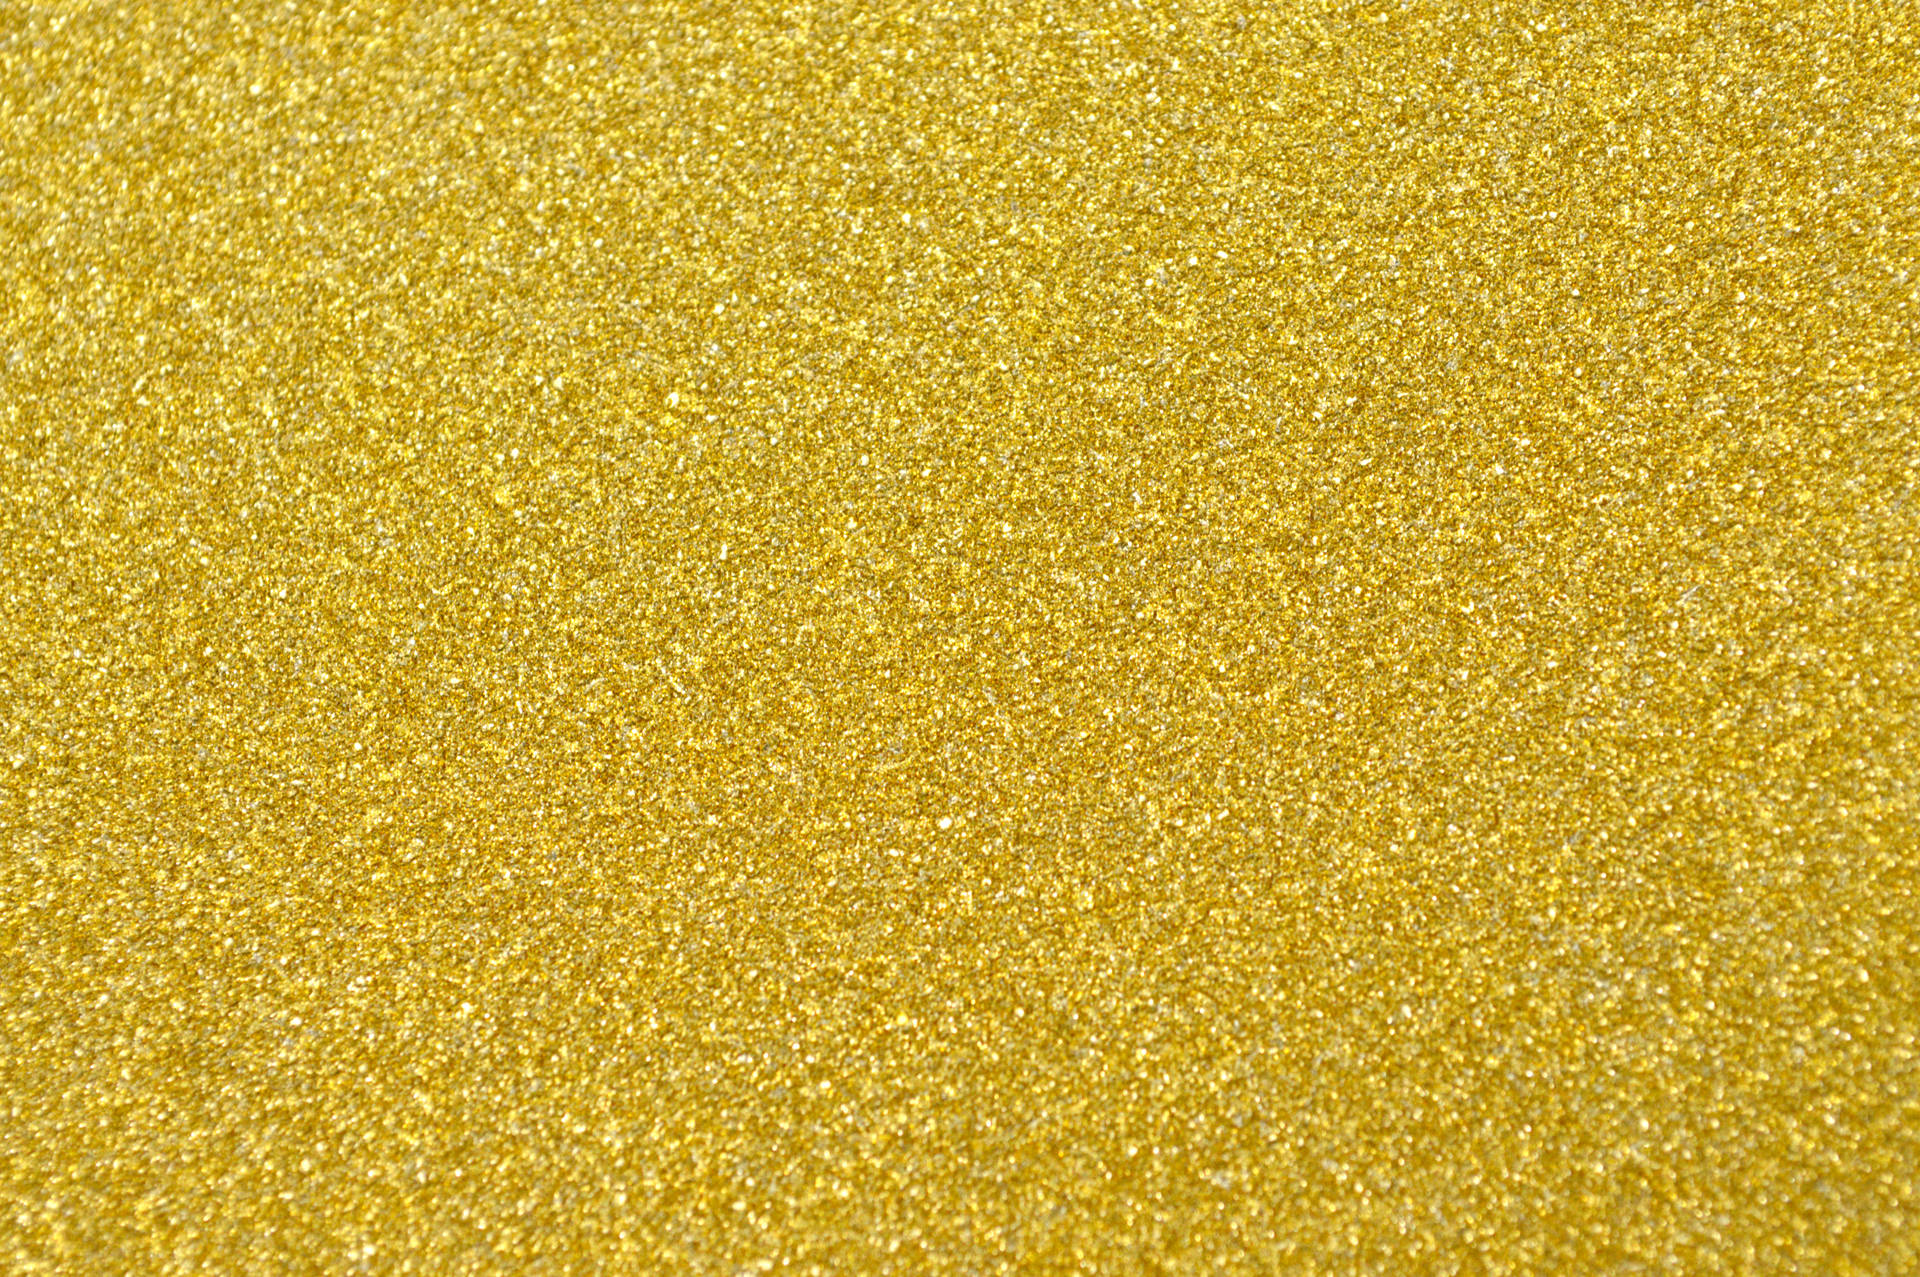 Gold 6016X4000 wallpaper